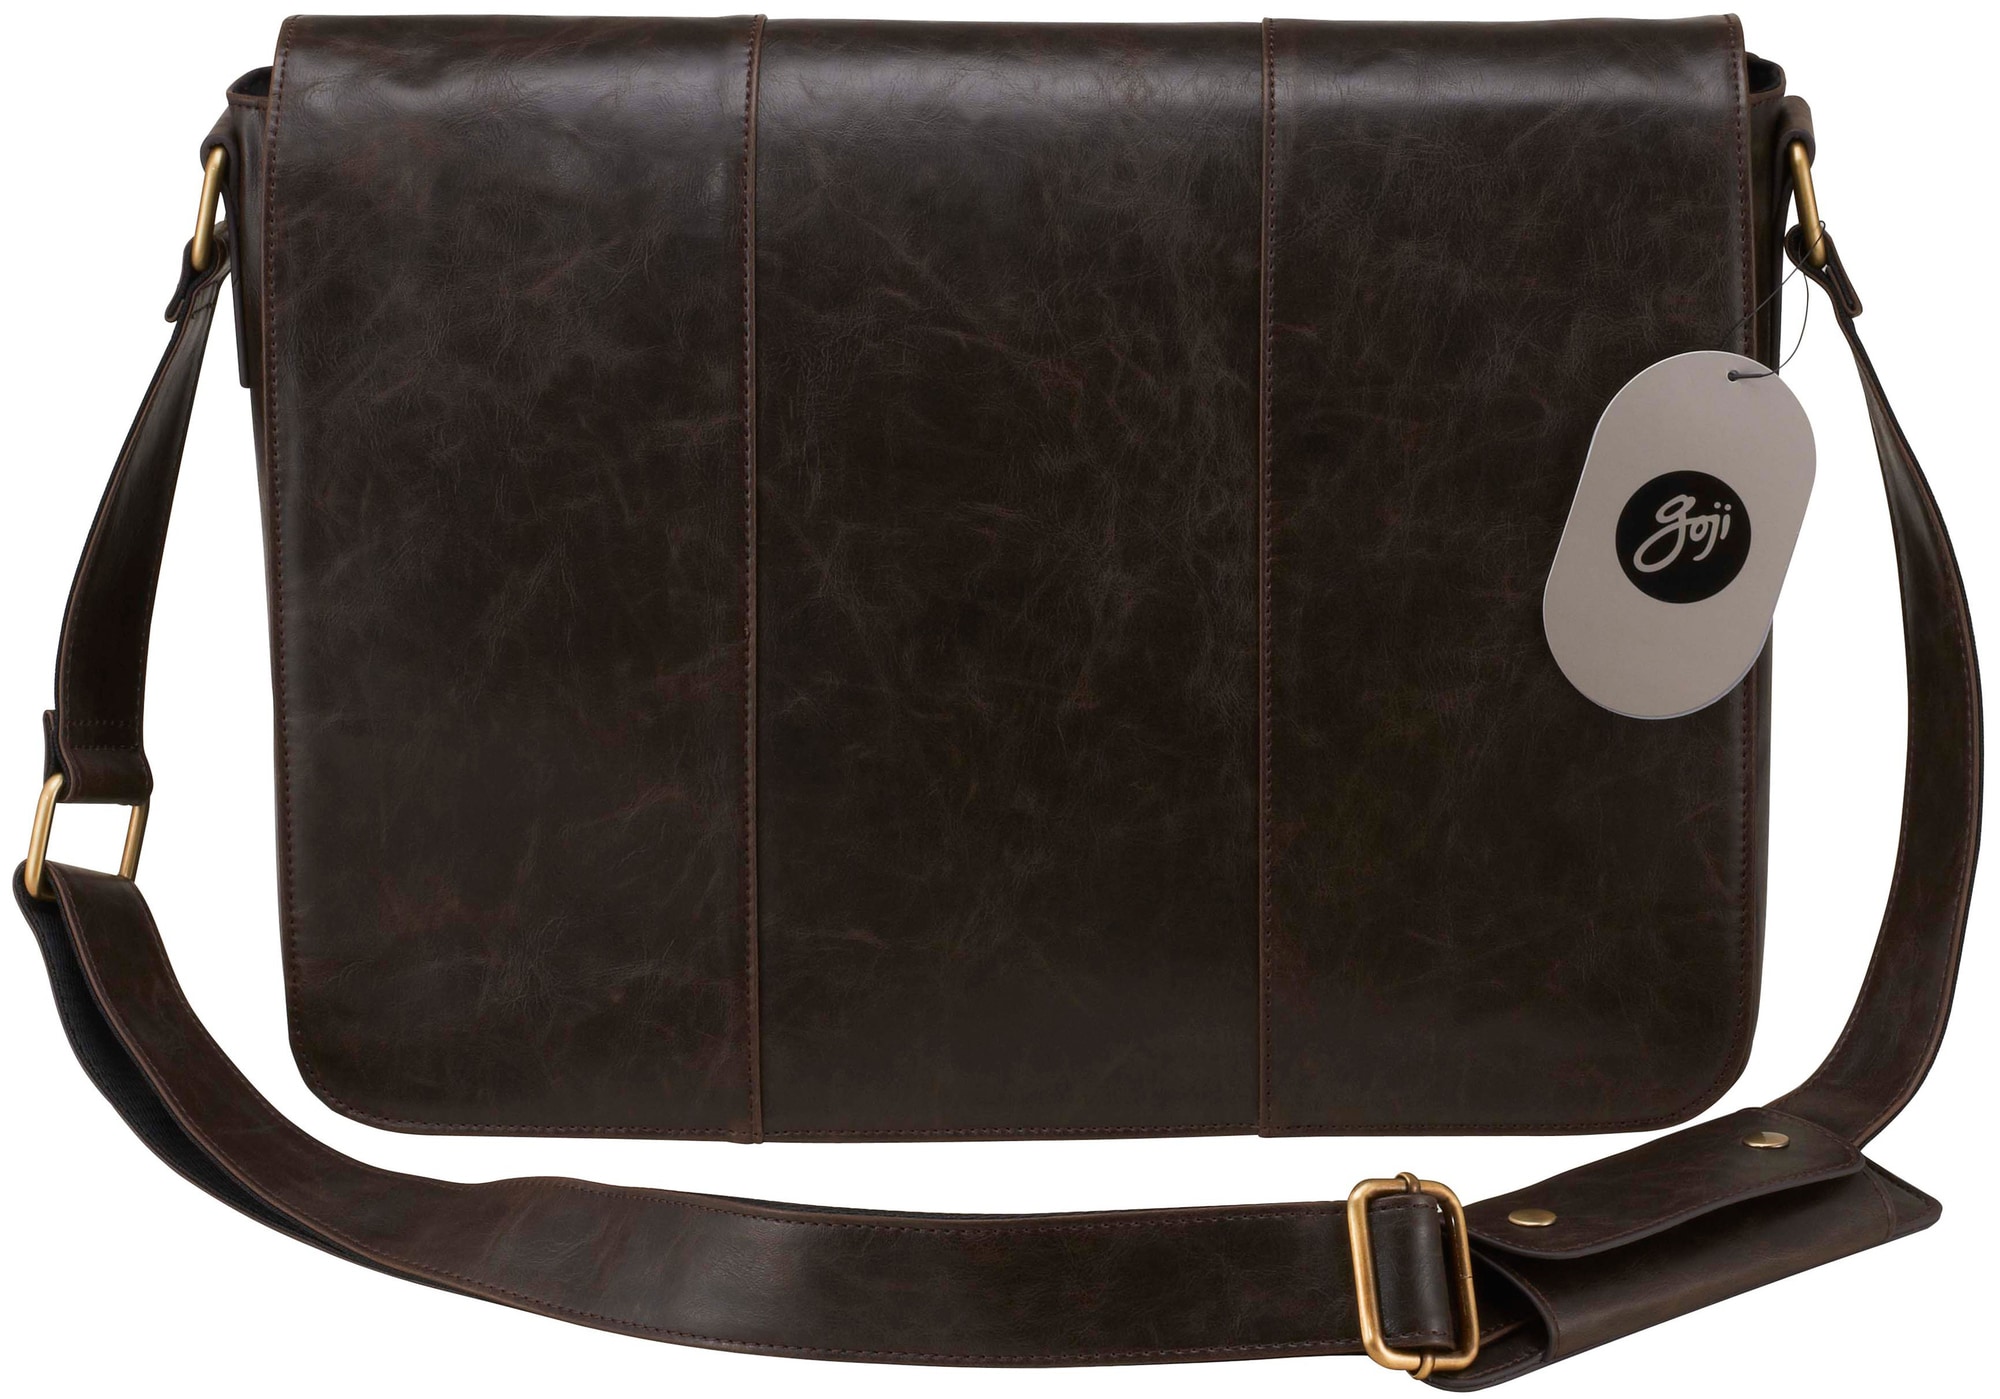 Goji taske til PC er - brun | Elgiganten